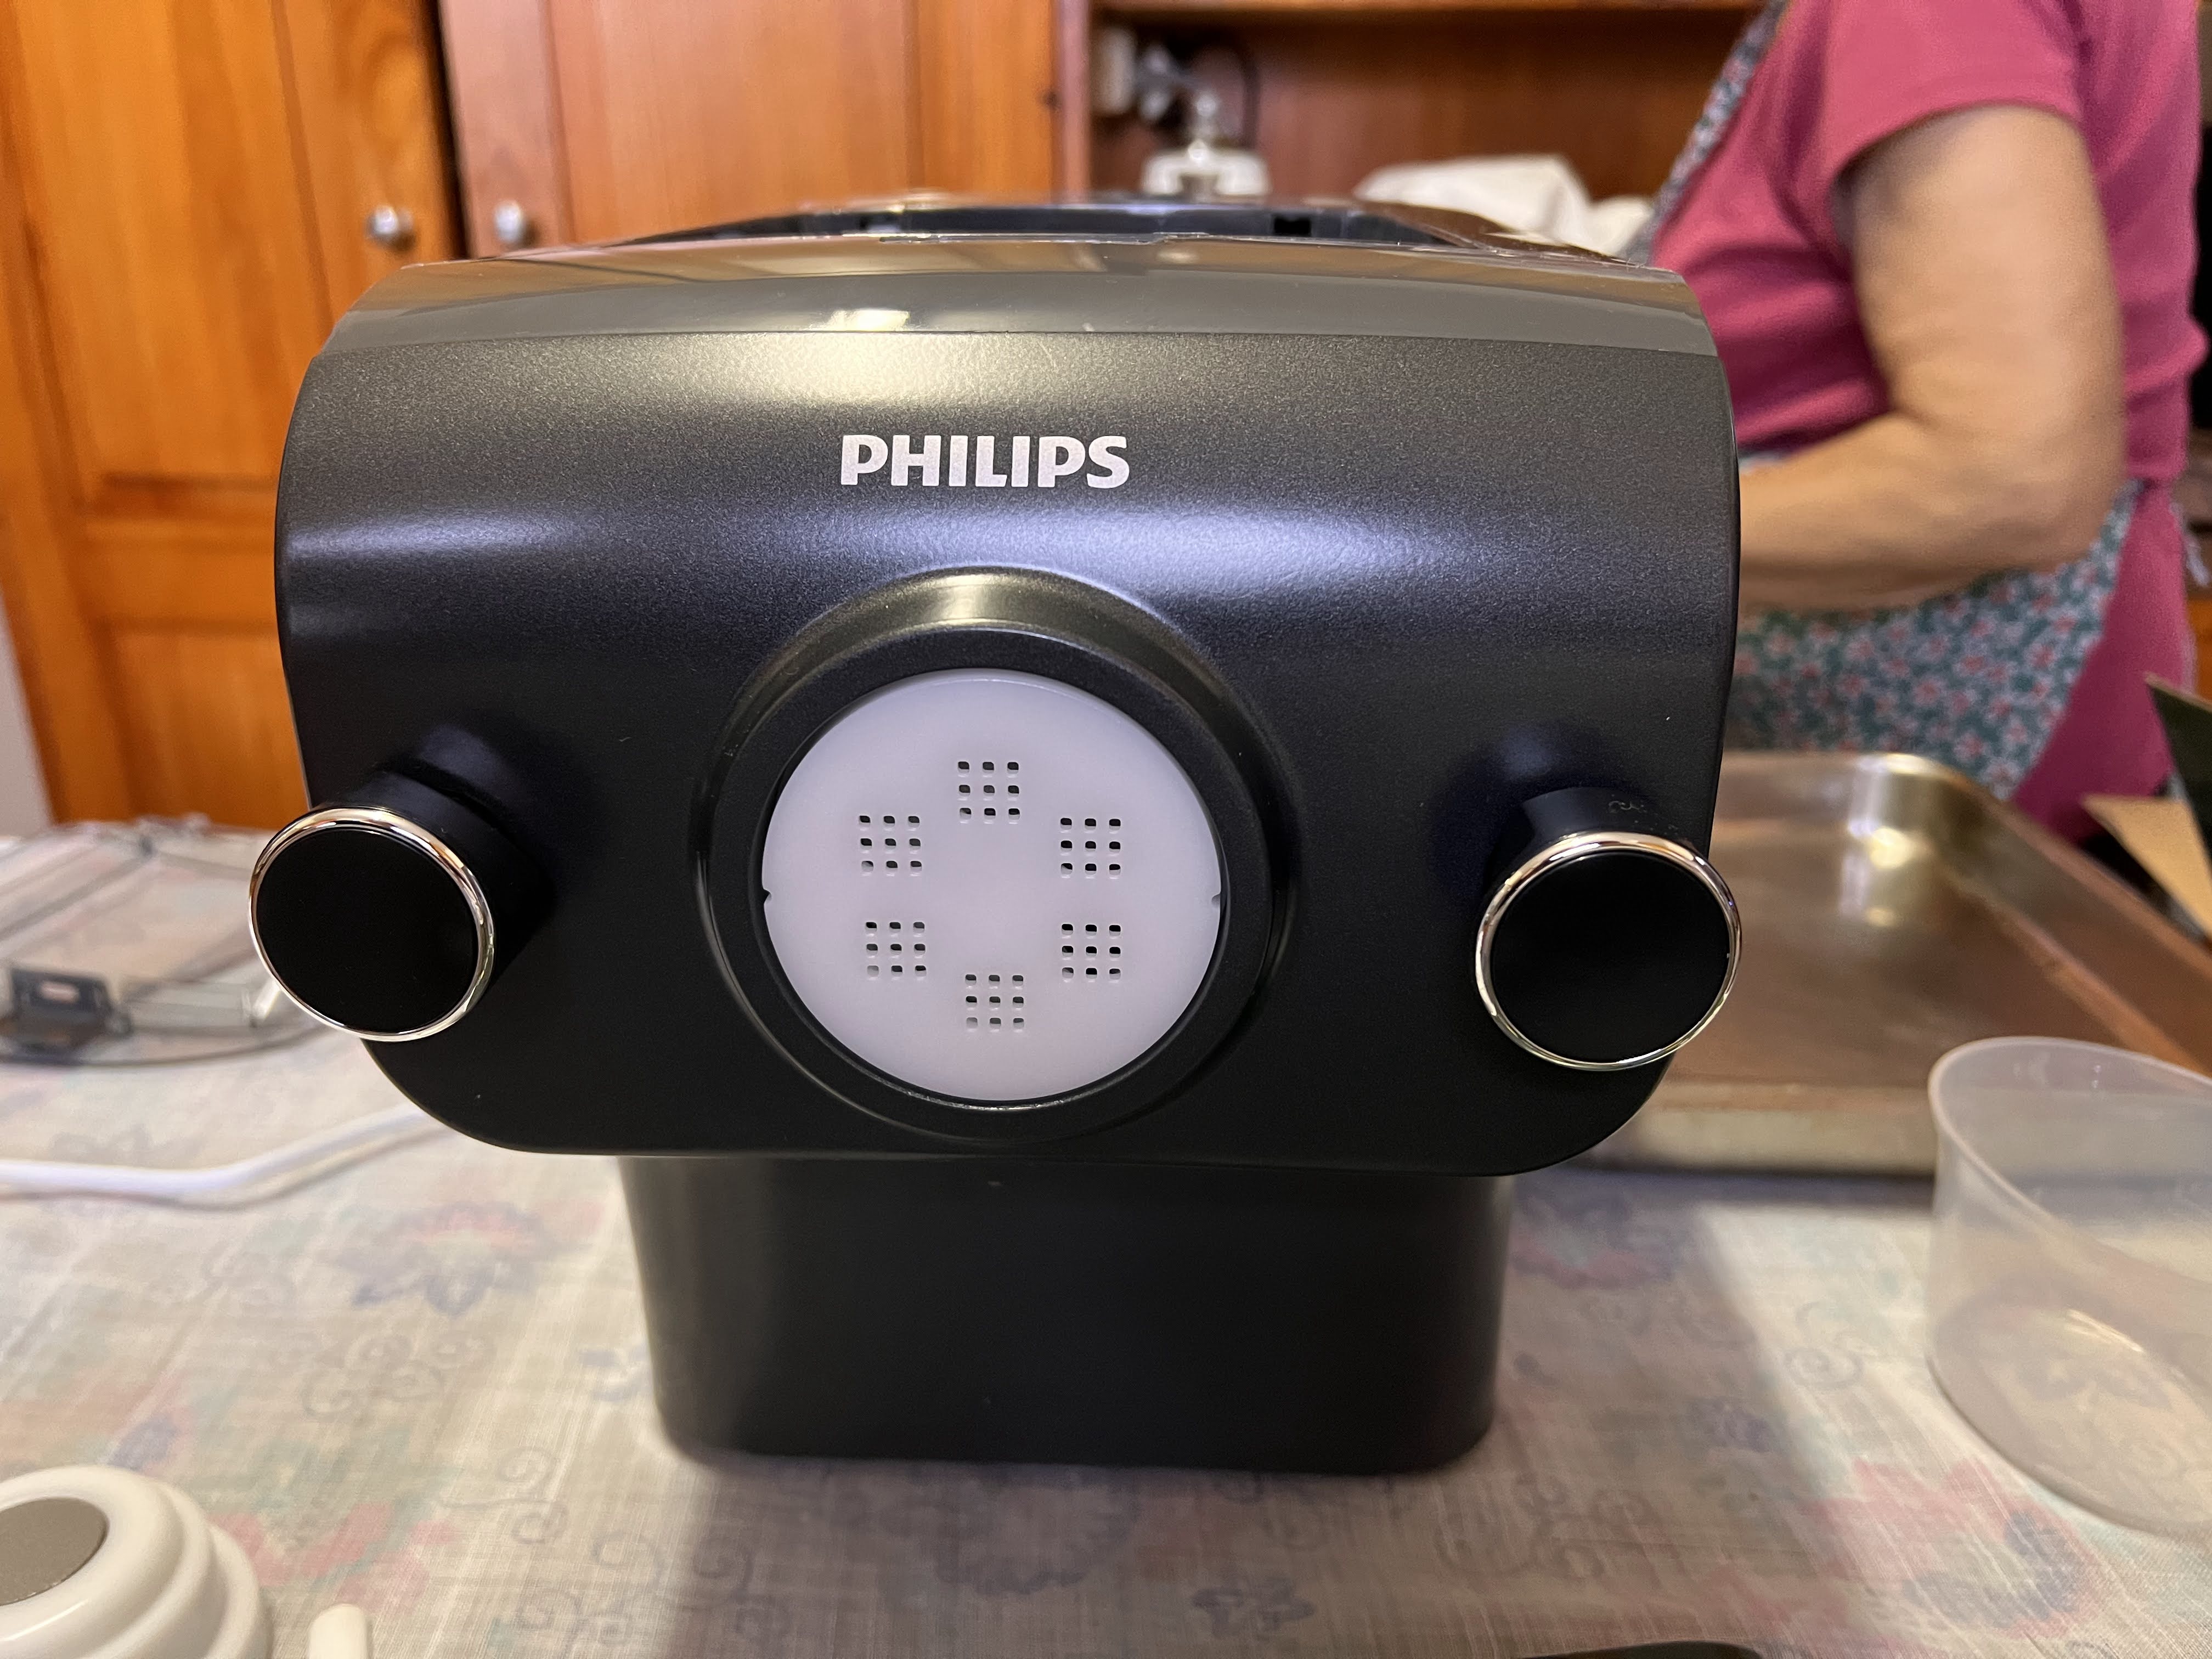 „Philips“ makaronų gamintojo apžvalga.  Vaizdas: Lifehacker Australia / Stephanie Nuzzo